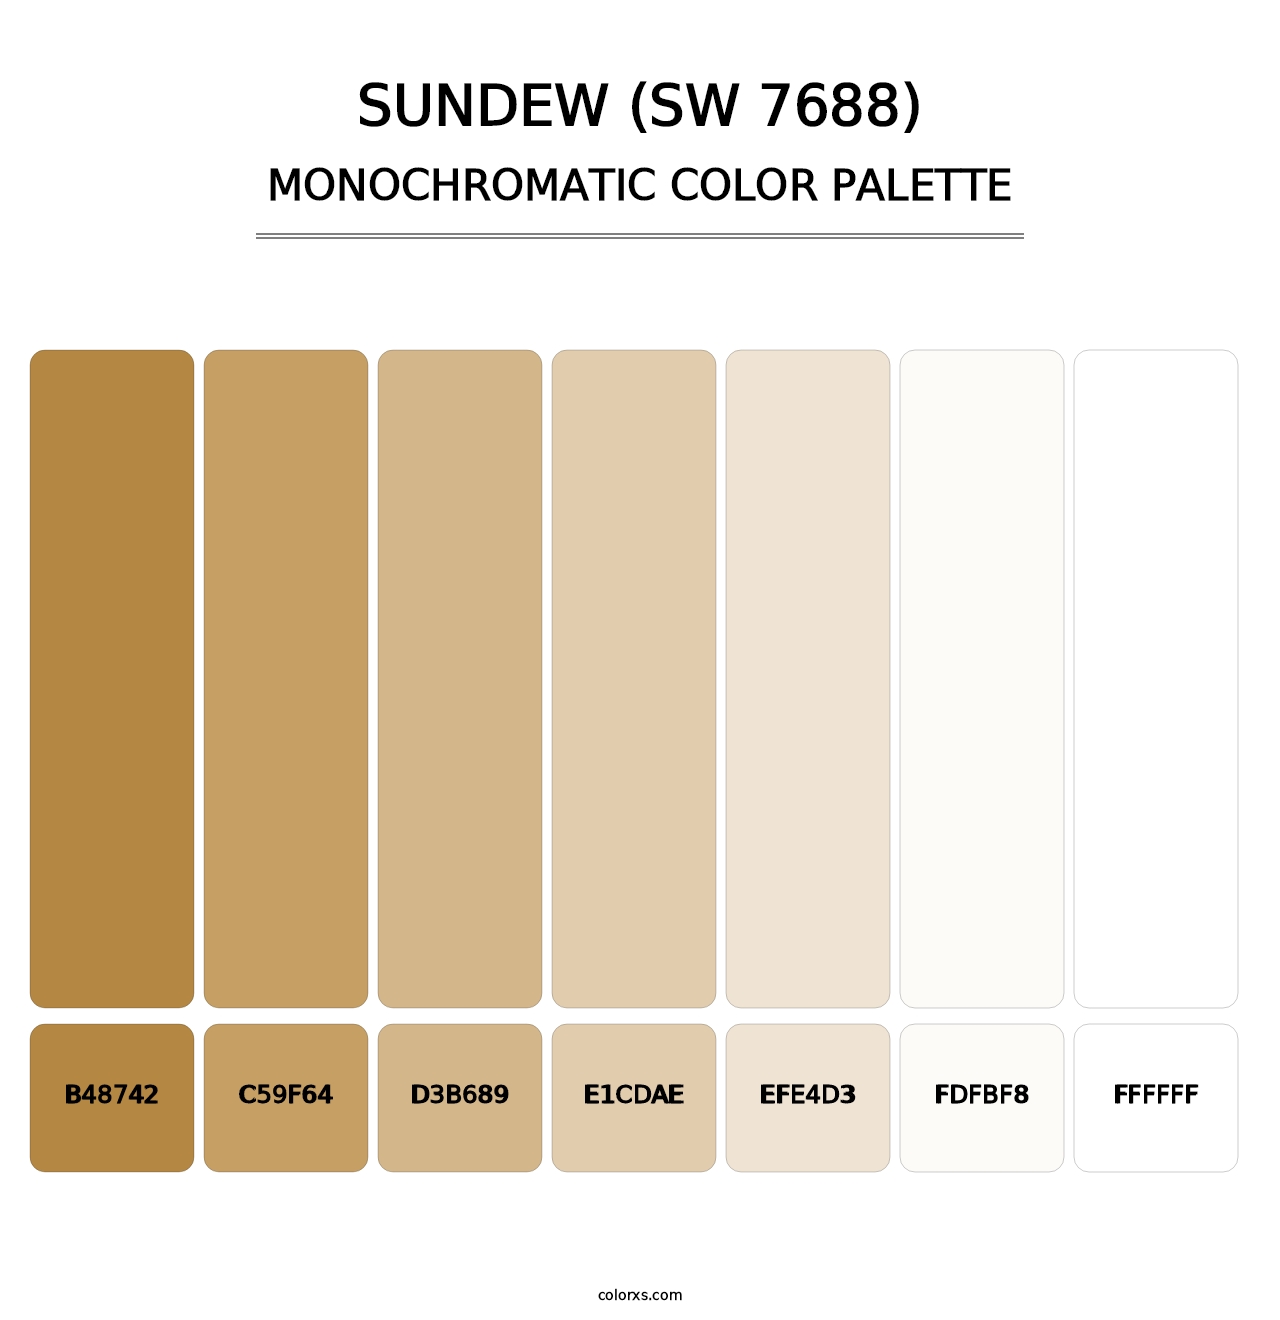 Sundew (SW 7688) - Monochromatic Color Palette